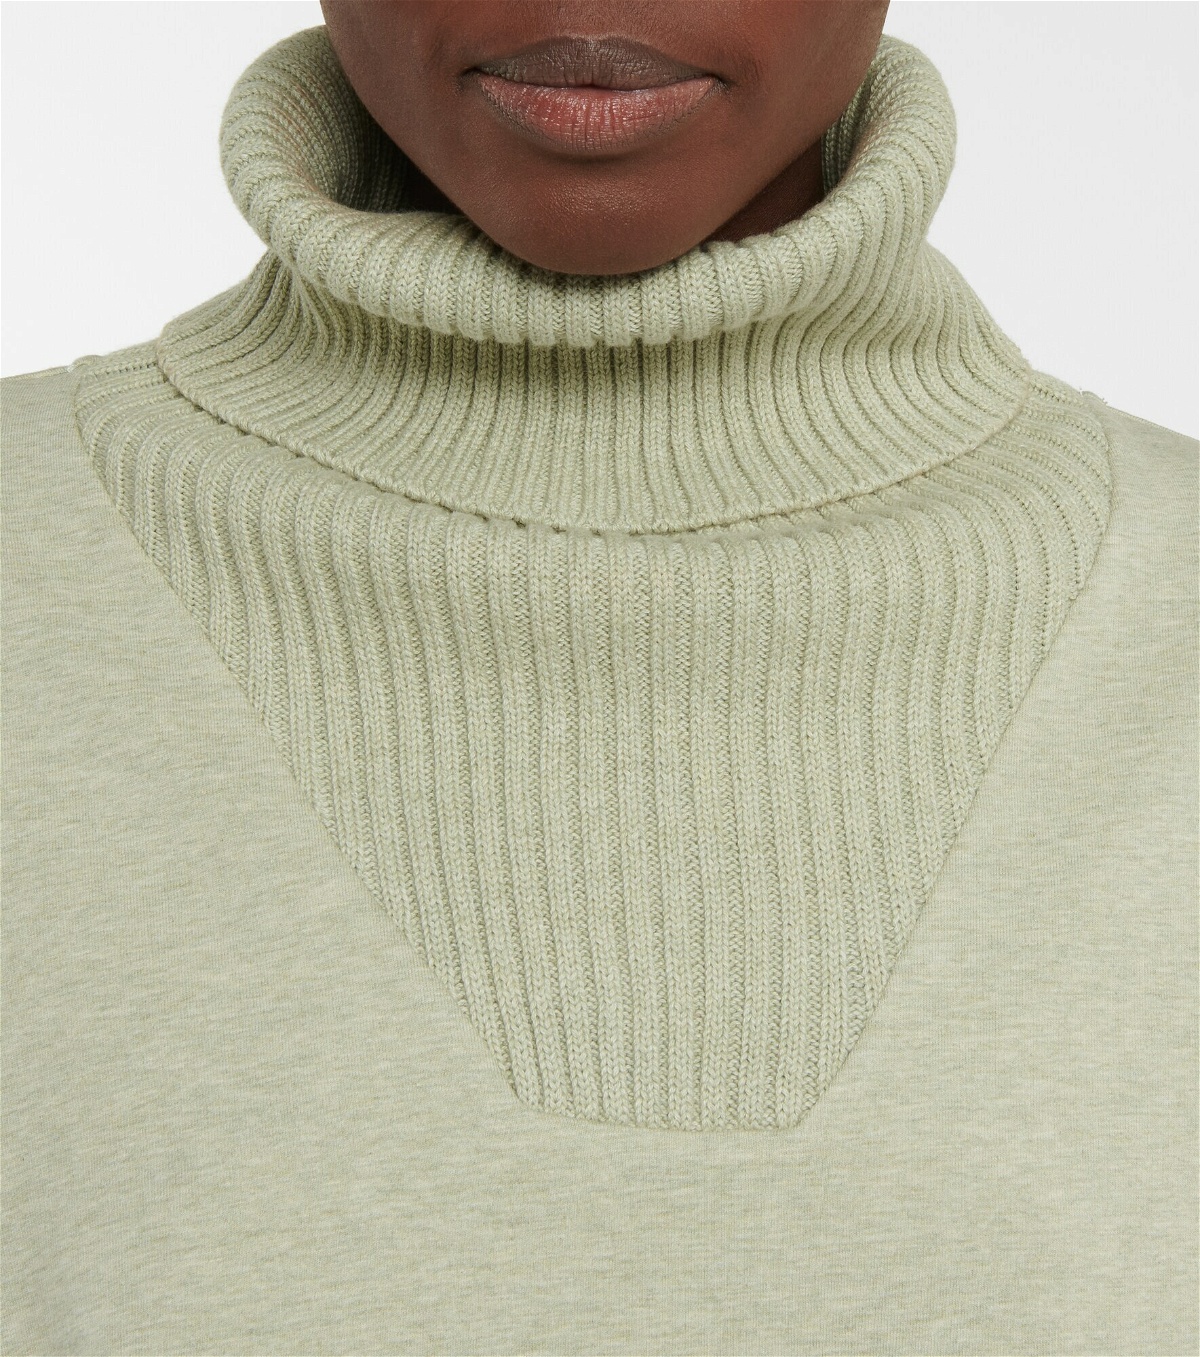 Varley - Britannia cotton-blend sweatshirt Varley